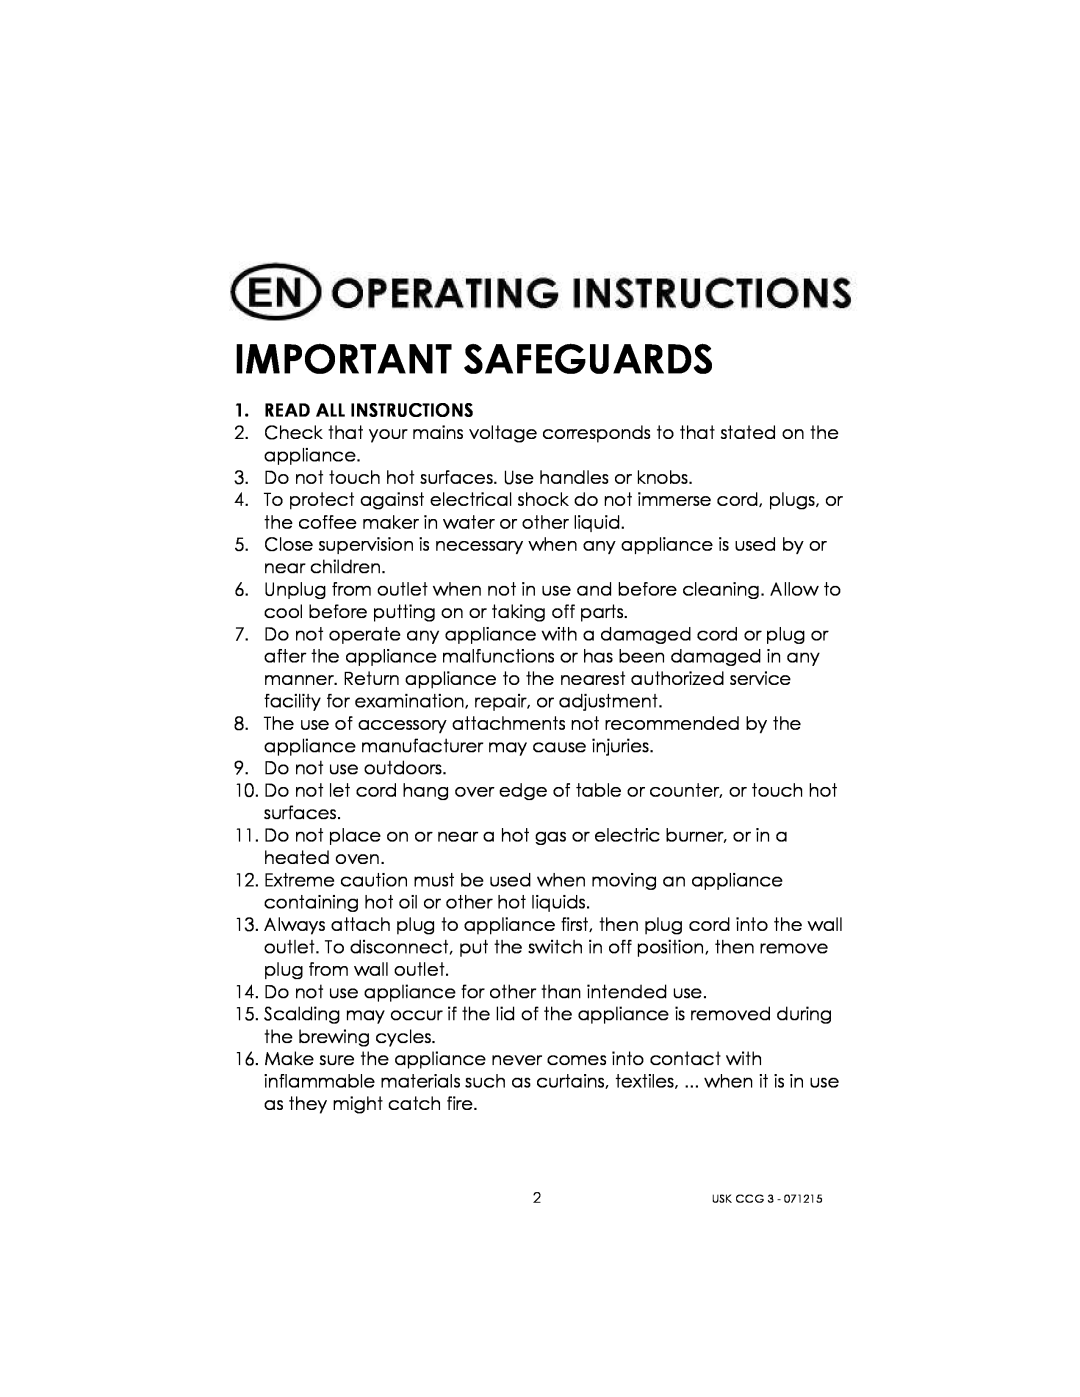 Kalorik USK CCG 3 manual Important Safeguards 